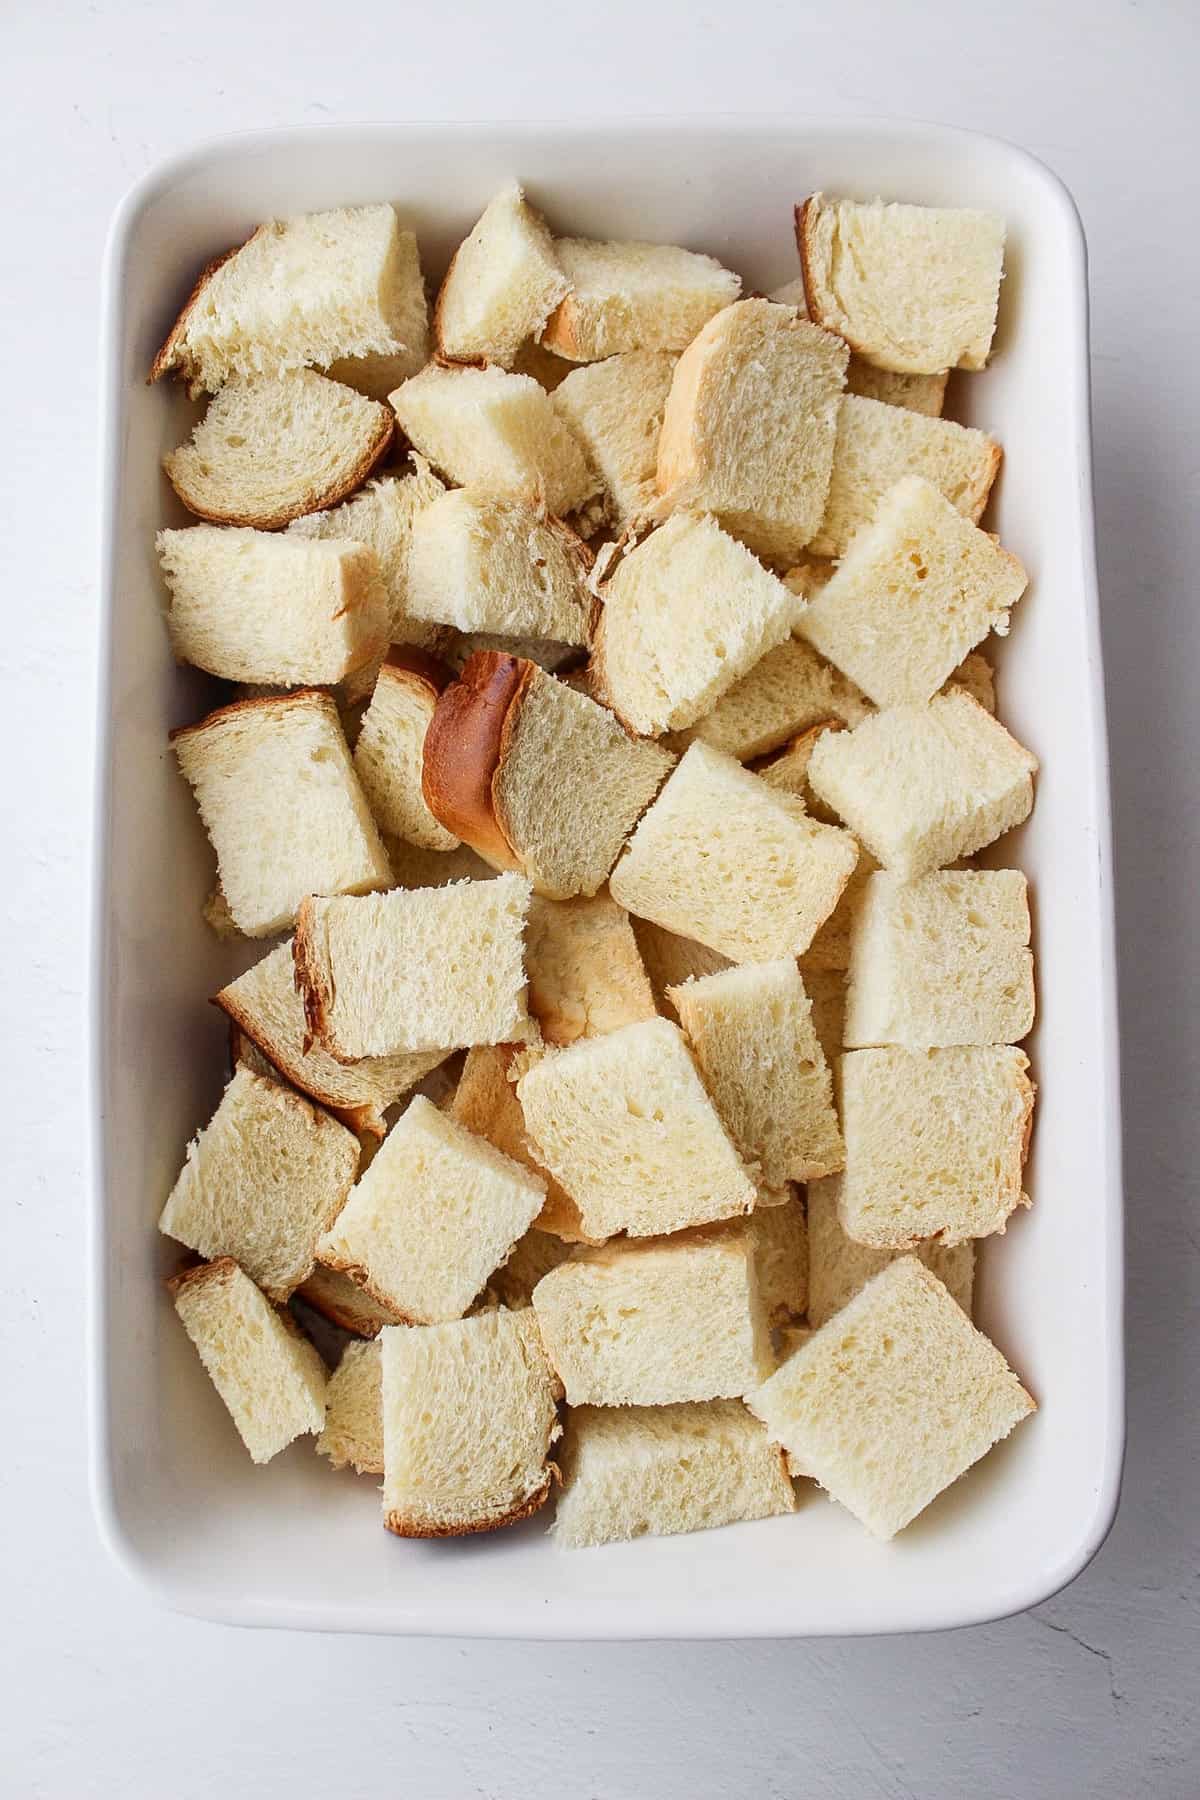 cubed brioche bread in a baking dish